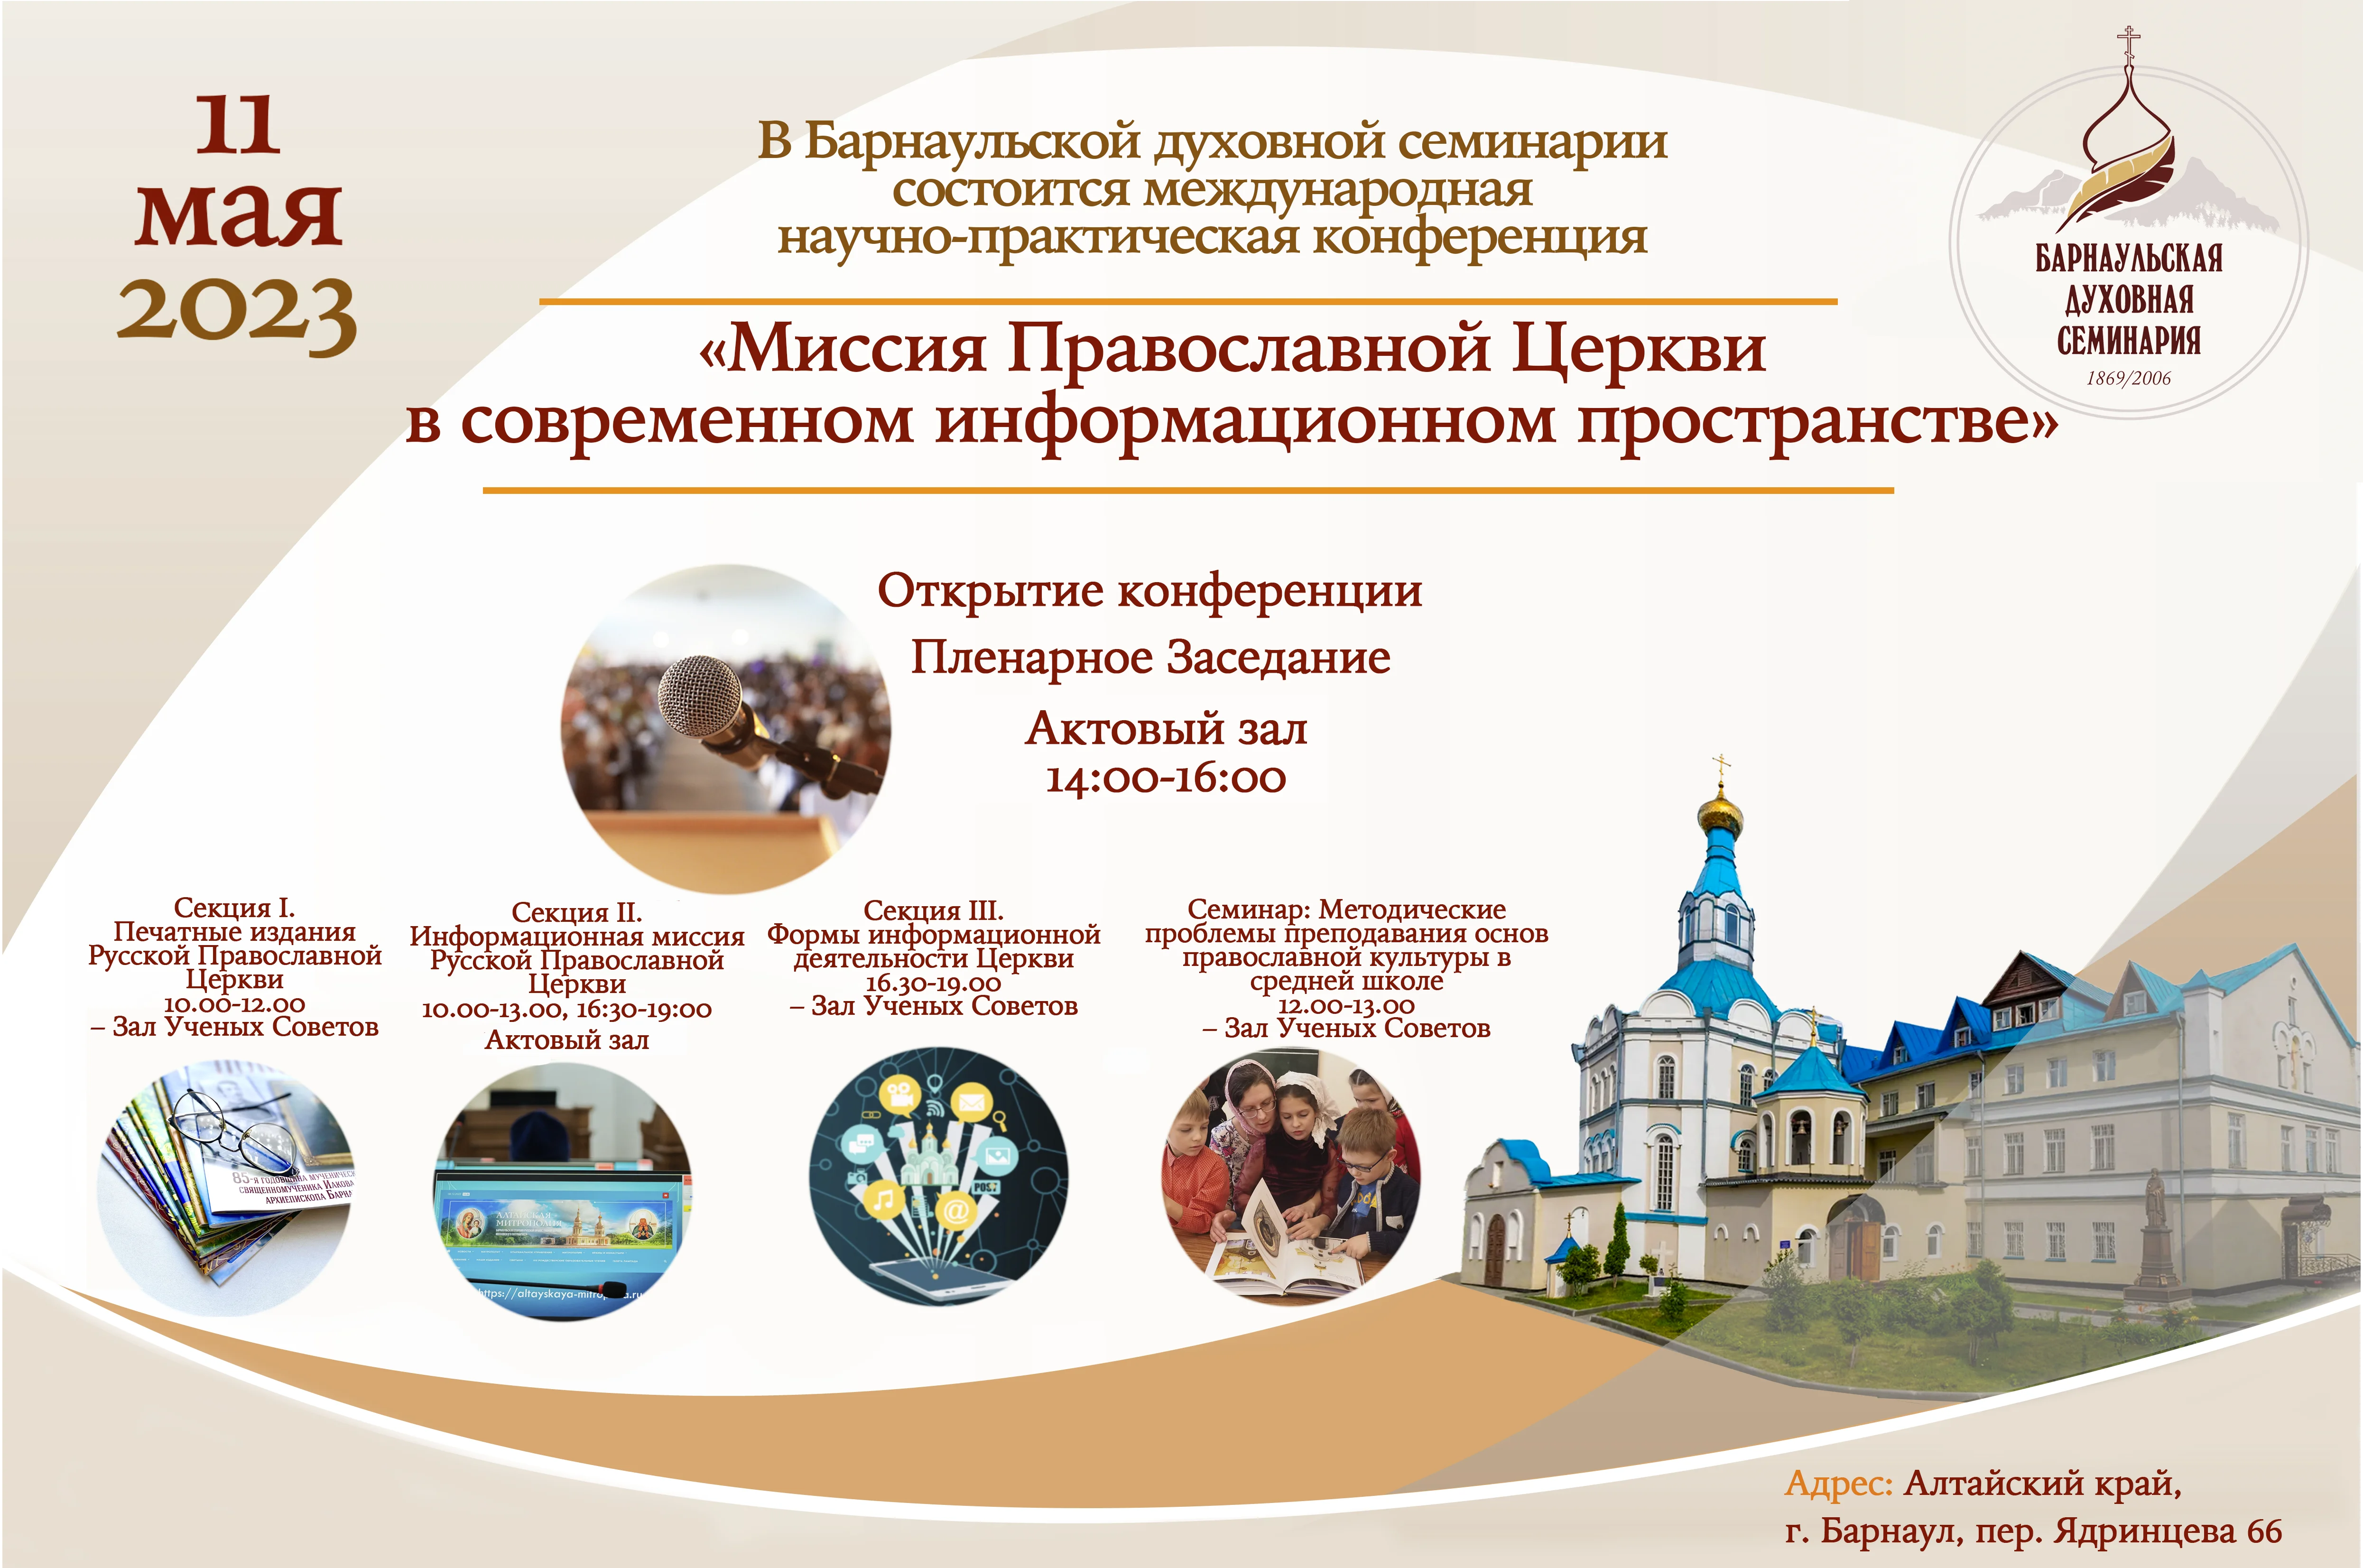 Состоялась конференция «Миссия Православной Церкви в современном информационном пространстве»